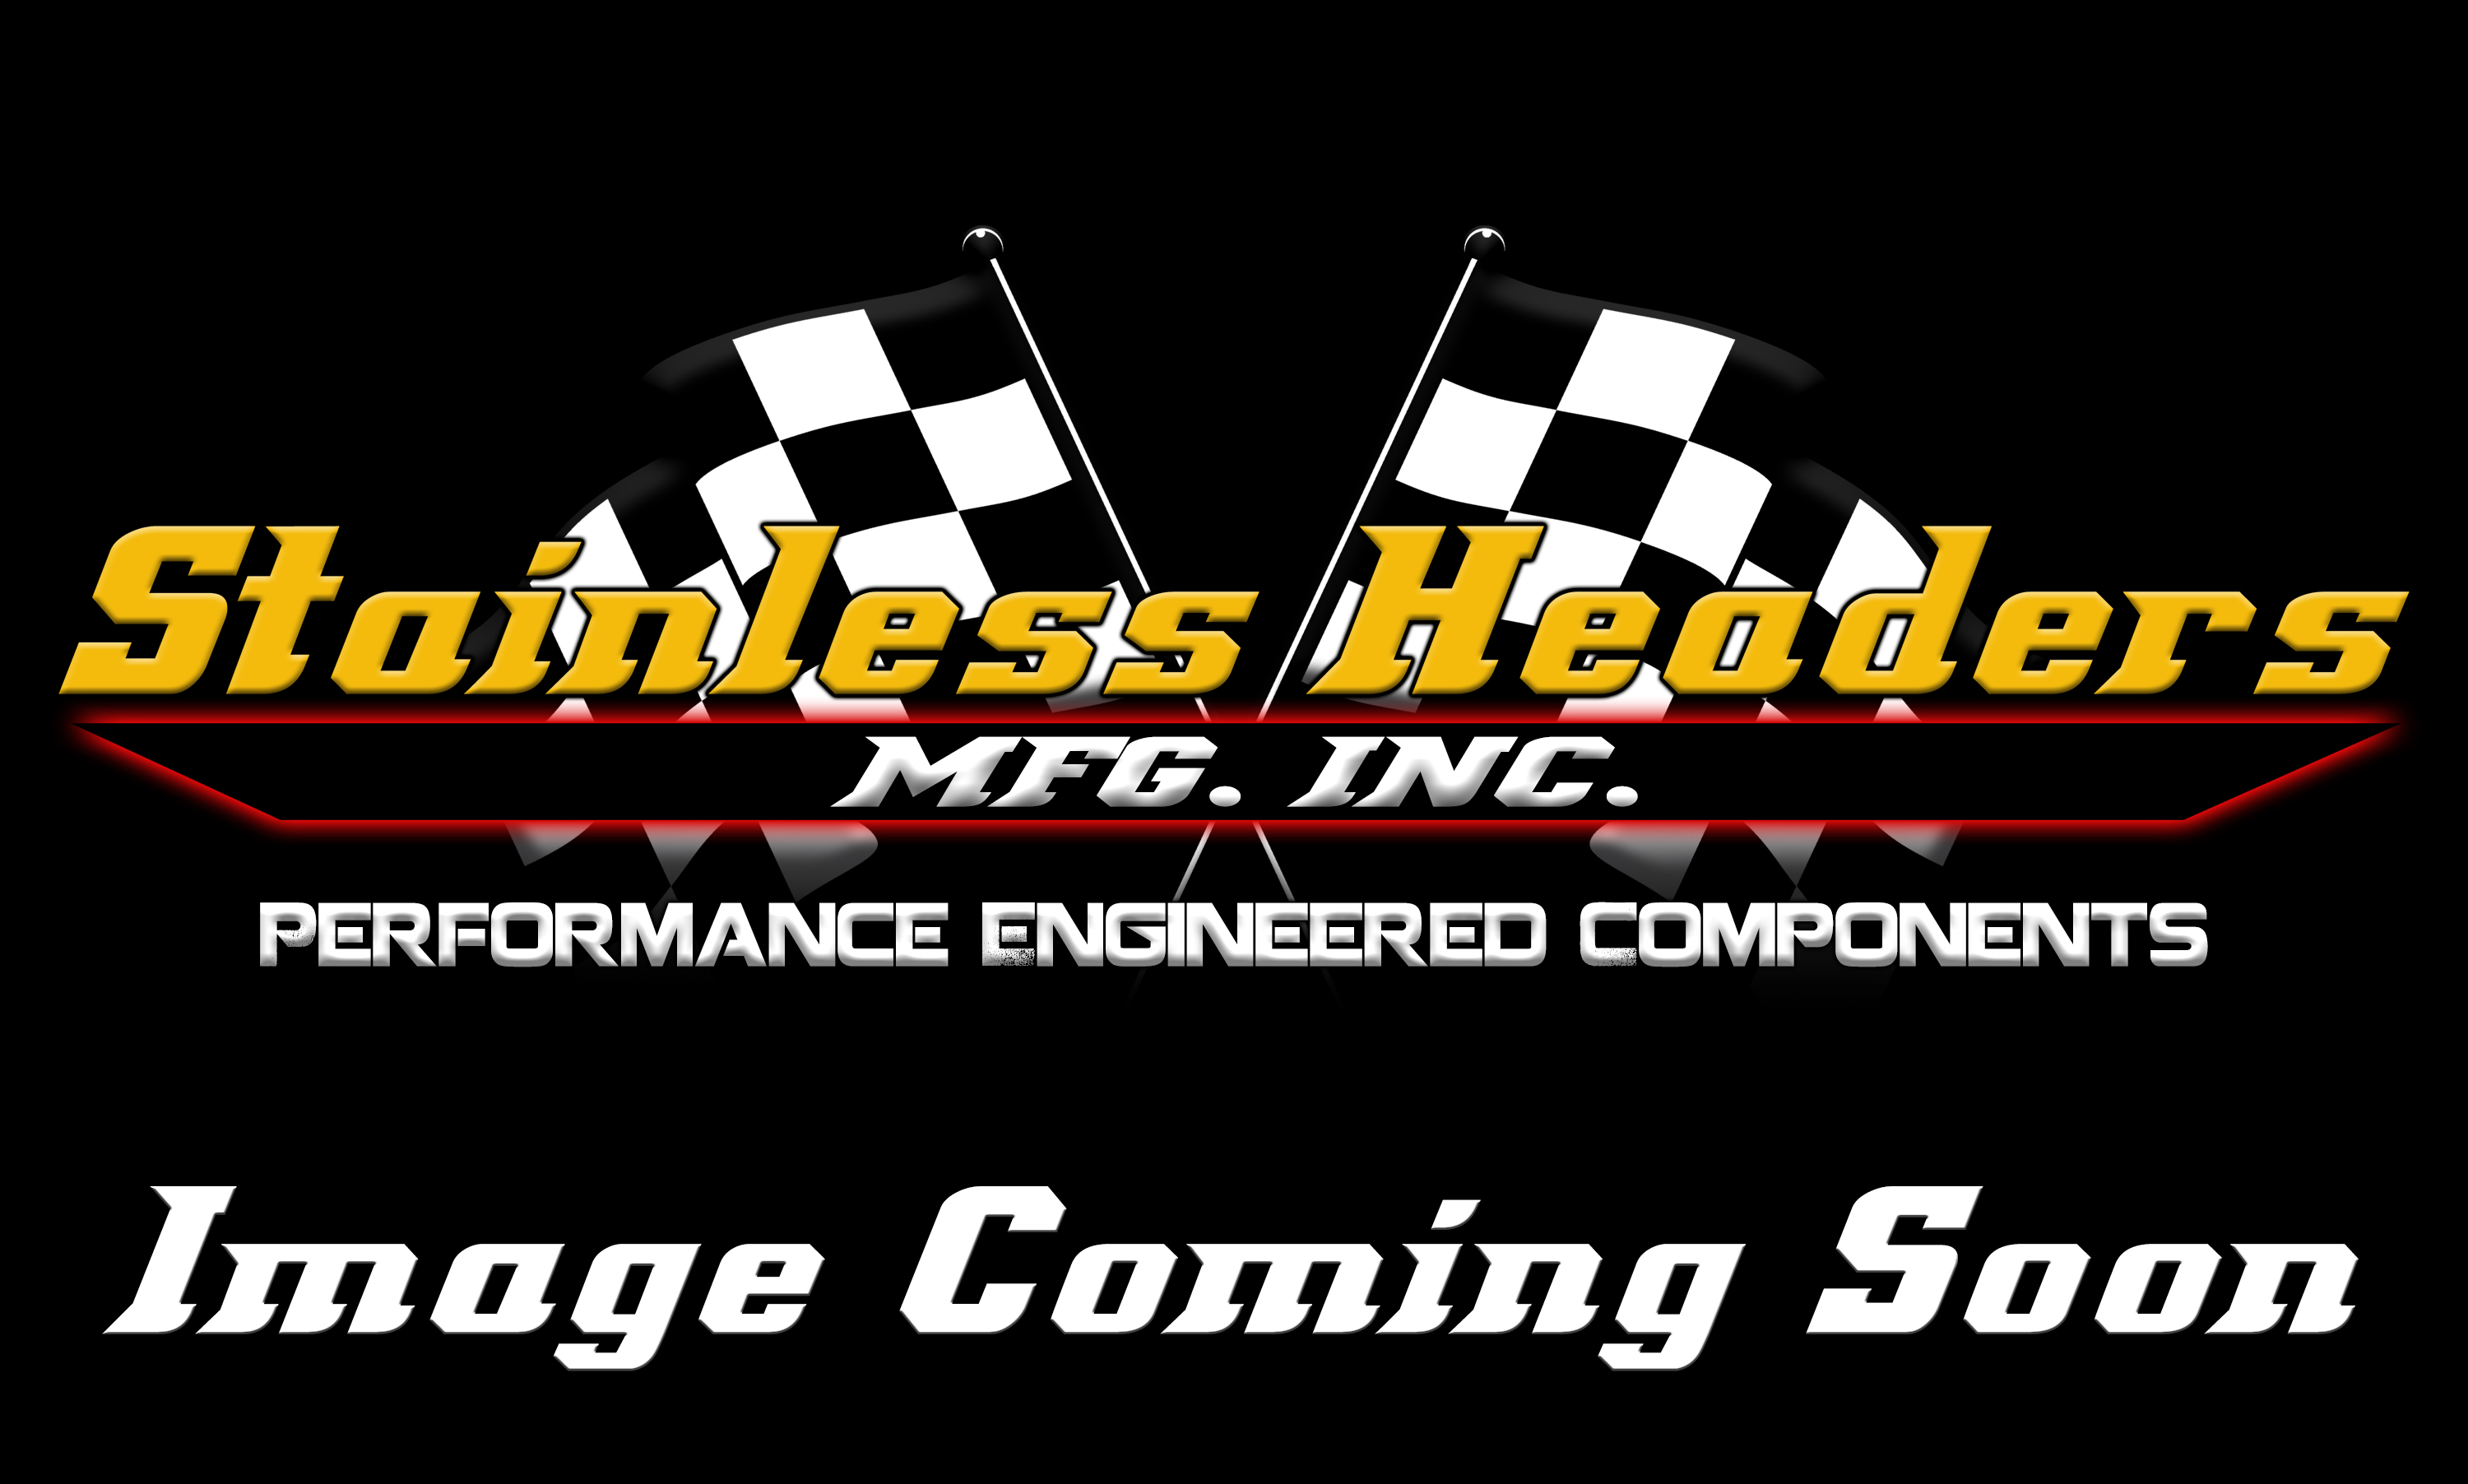 Stainless Headers - Chevrolet LS7/LSX Custom Turbo Header Build Kit - Image 1